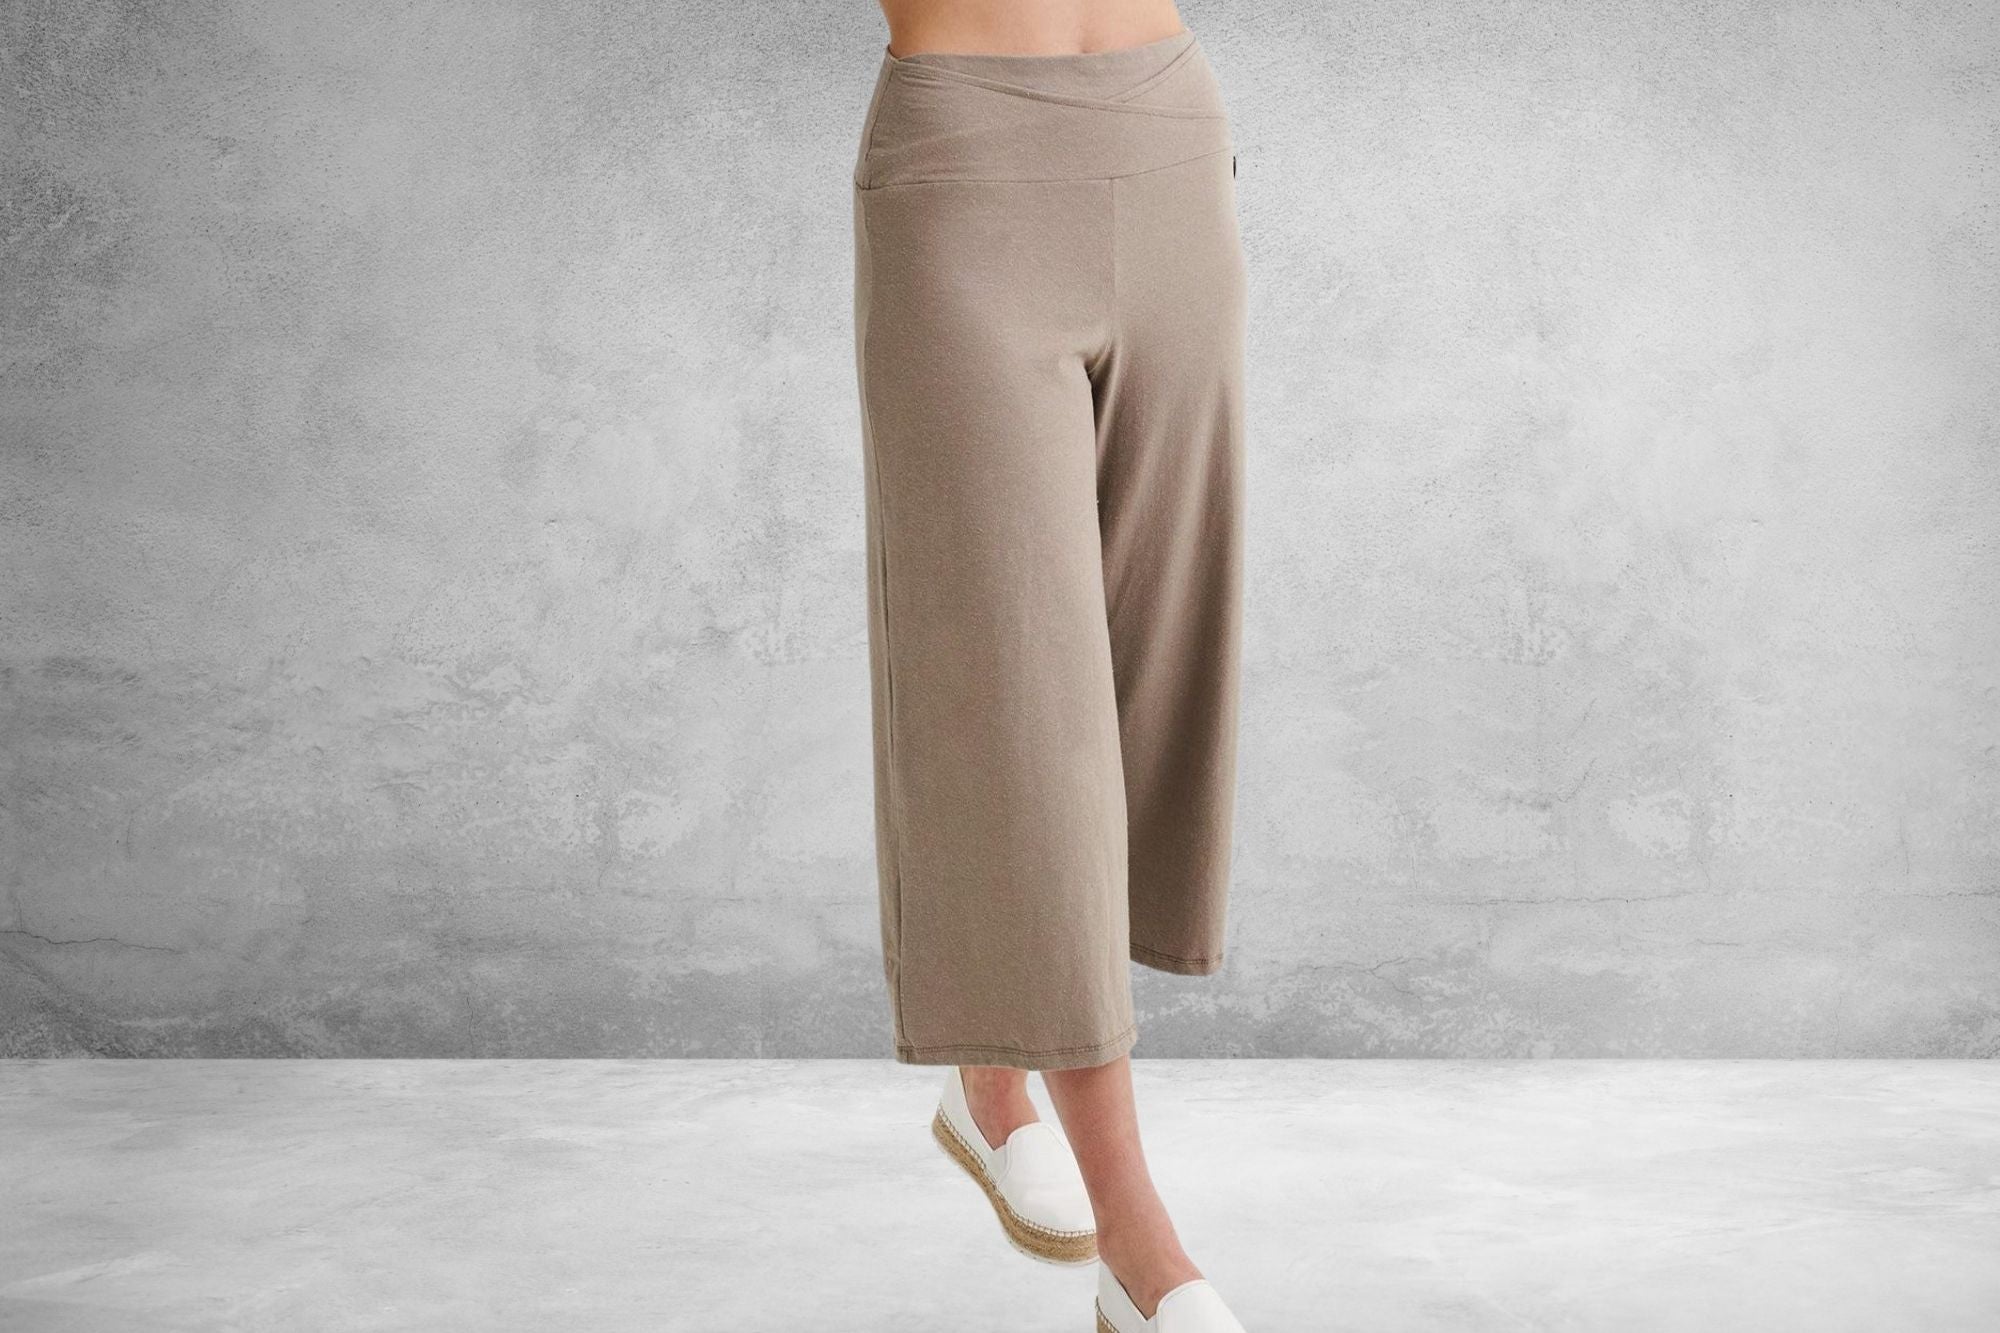 PHISOCKAT, Pants & Jumpsuits, Phisockat Womens Capris Yoga Pants With  Pockets